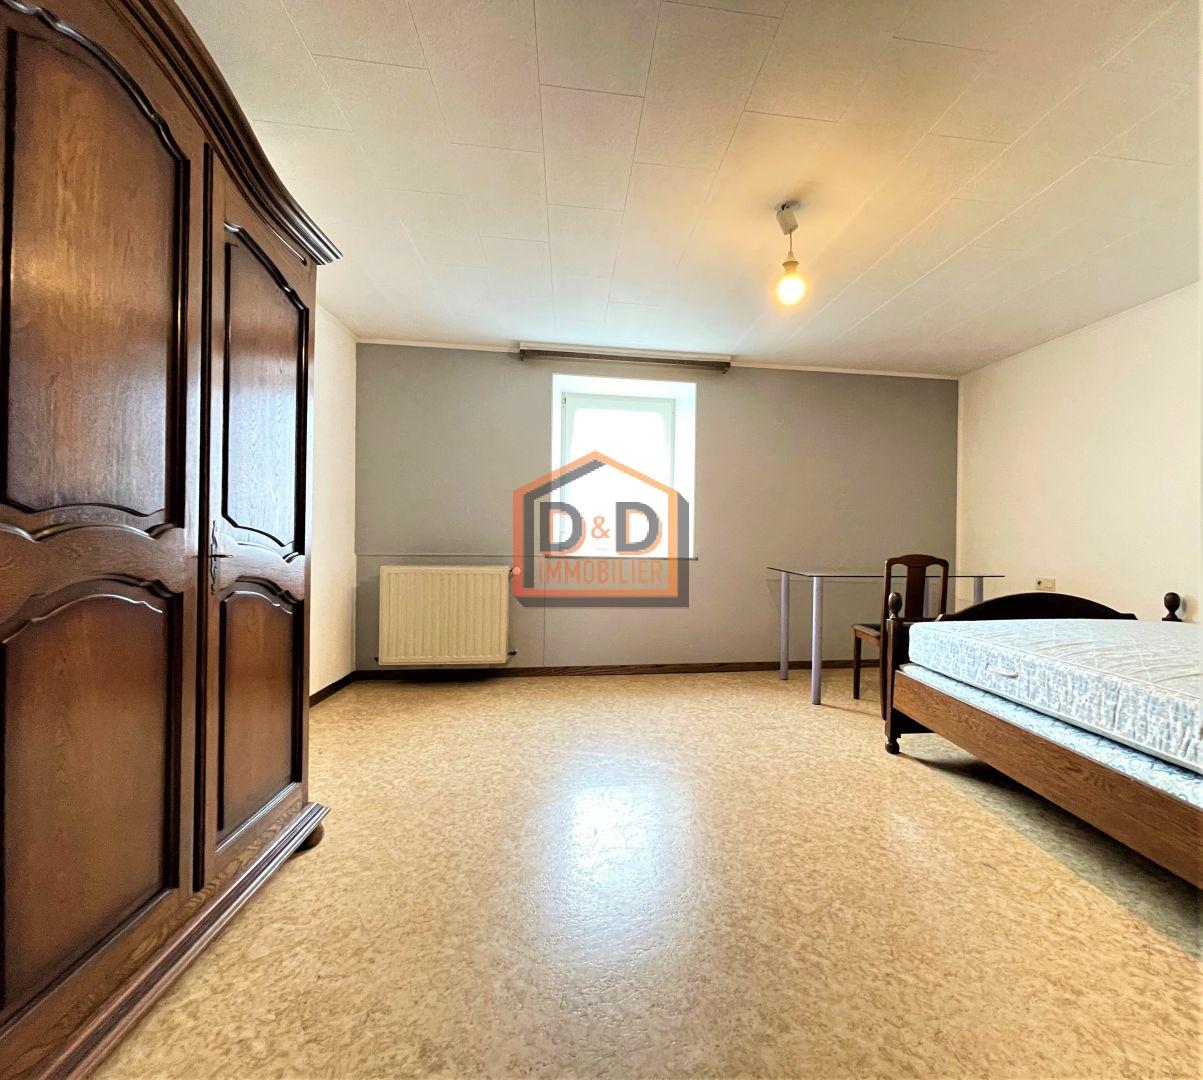 Appartement à Niederkorn, 90 m², 3 chambres, 1 salle de bain, 1 550 €/mois